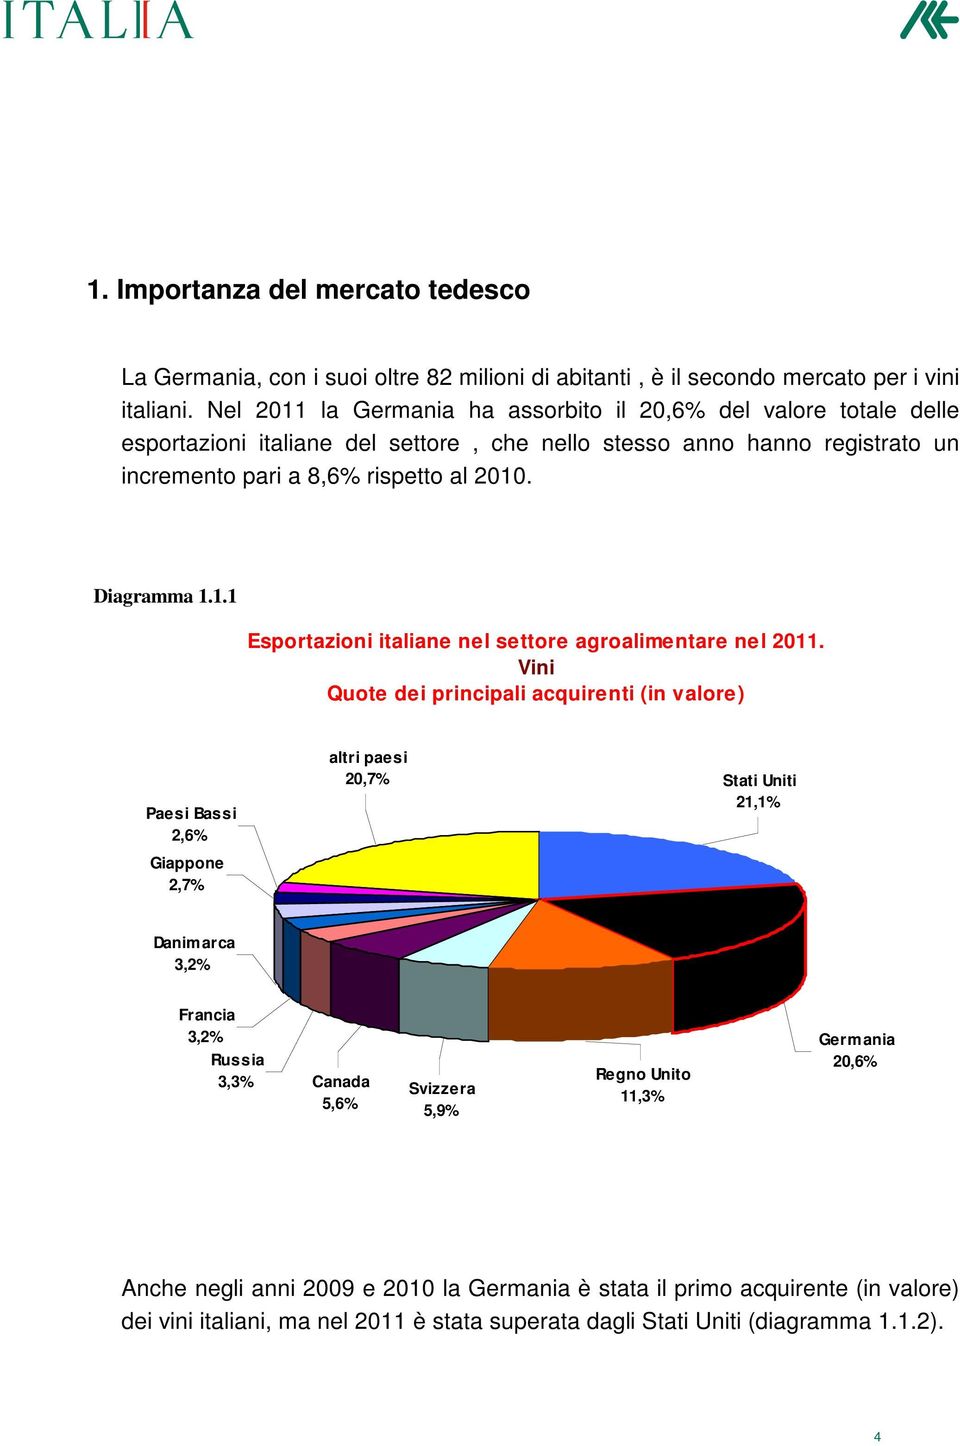 Diagramma 1.1.1 Esportazioni italiane nel settore agroalimentare nel 2011.